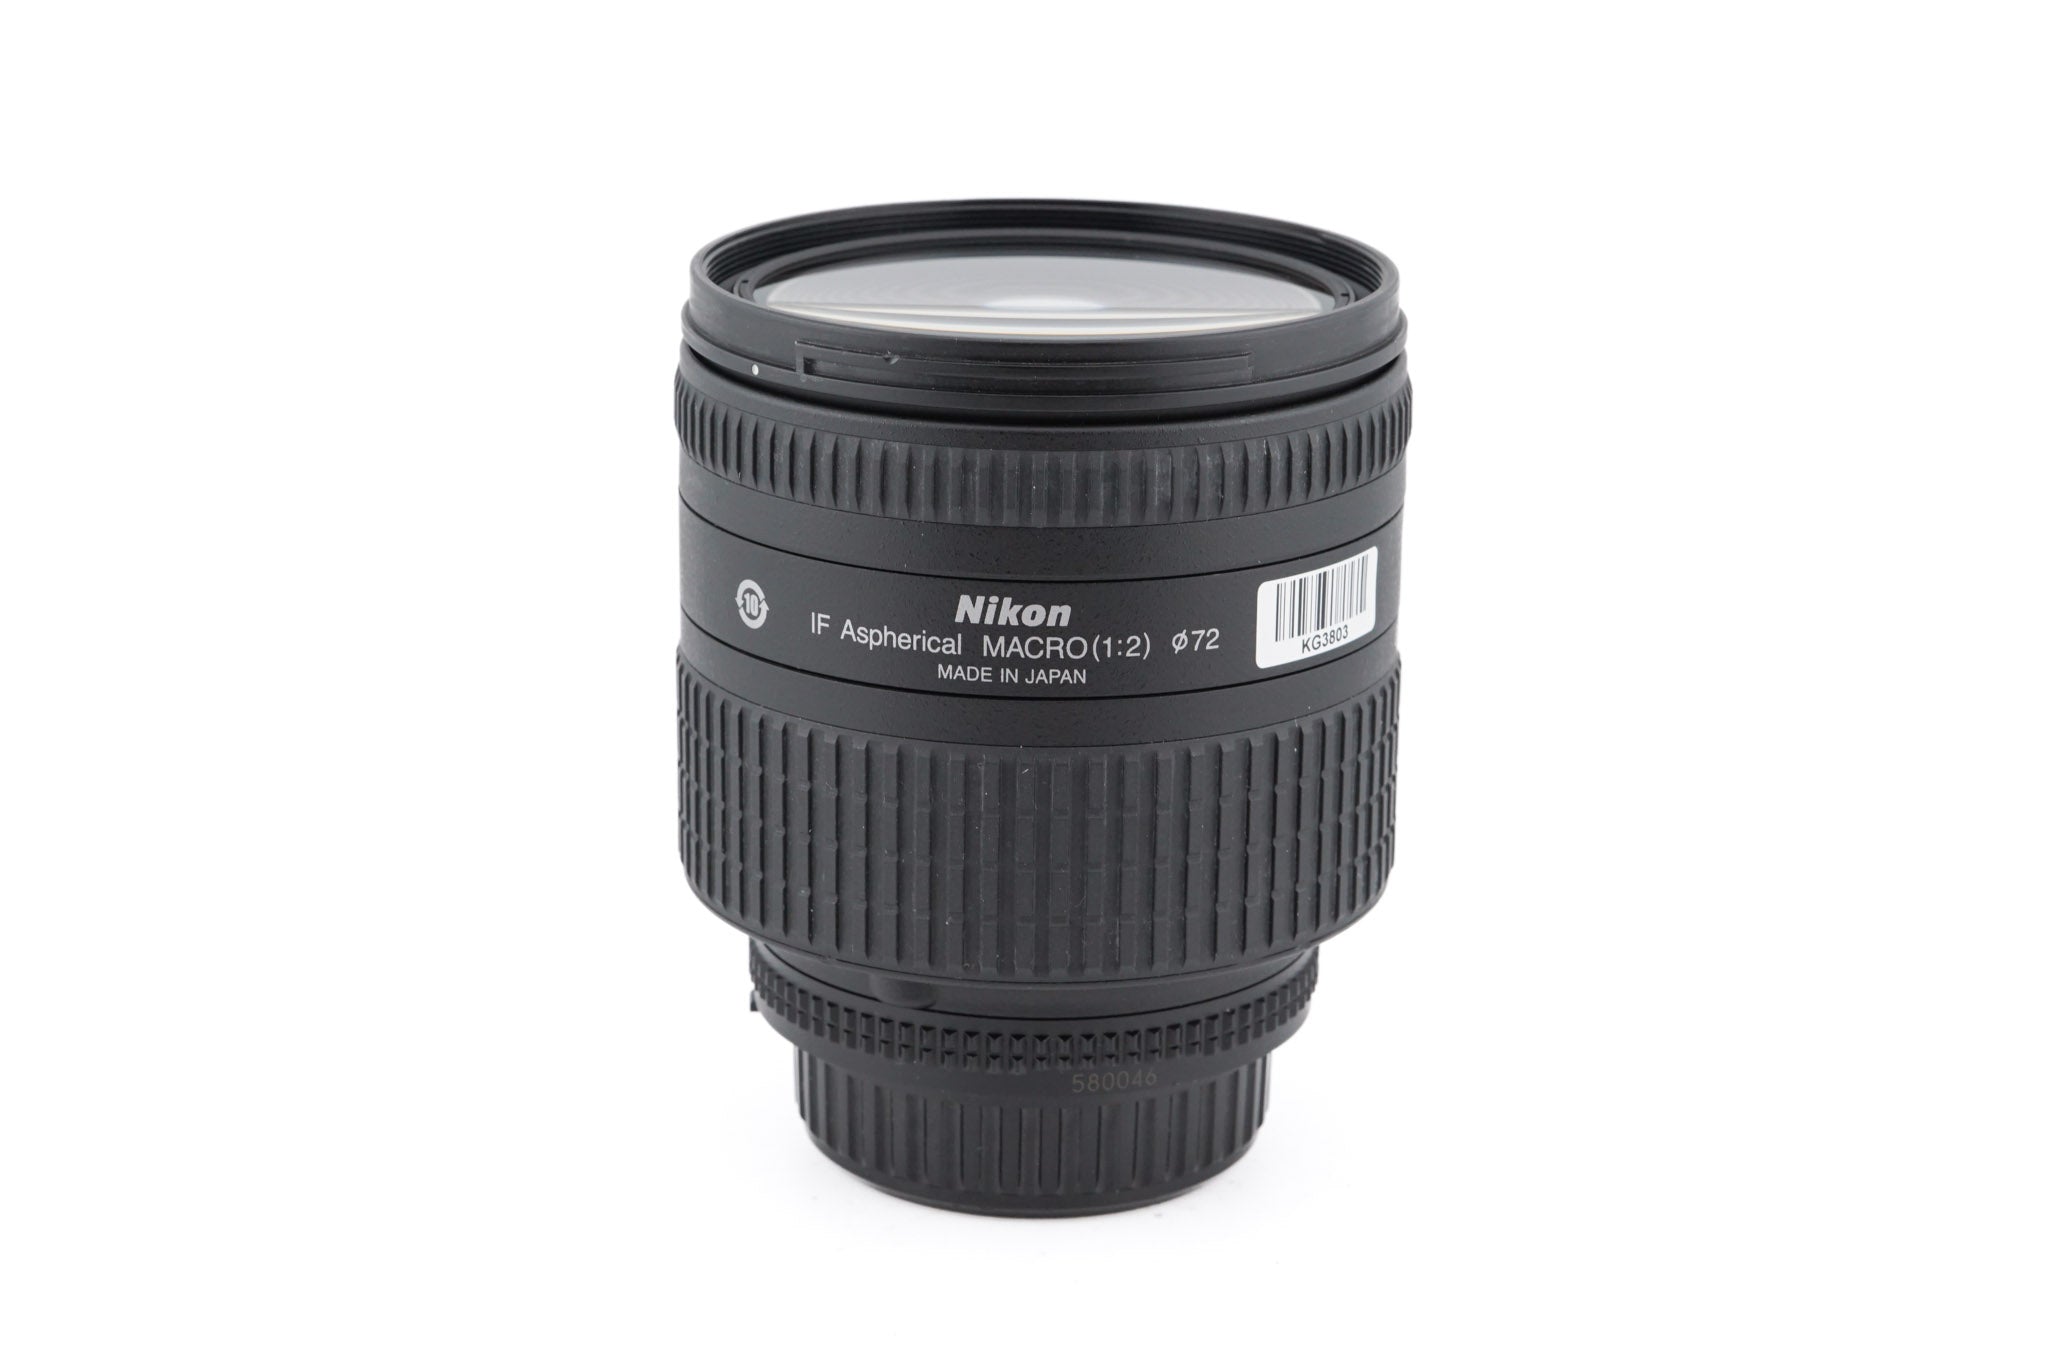 Nikon 24-85mm f2.8-4 D AF Nikkor IF Aspherical Macro